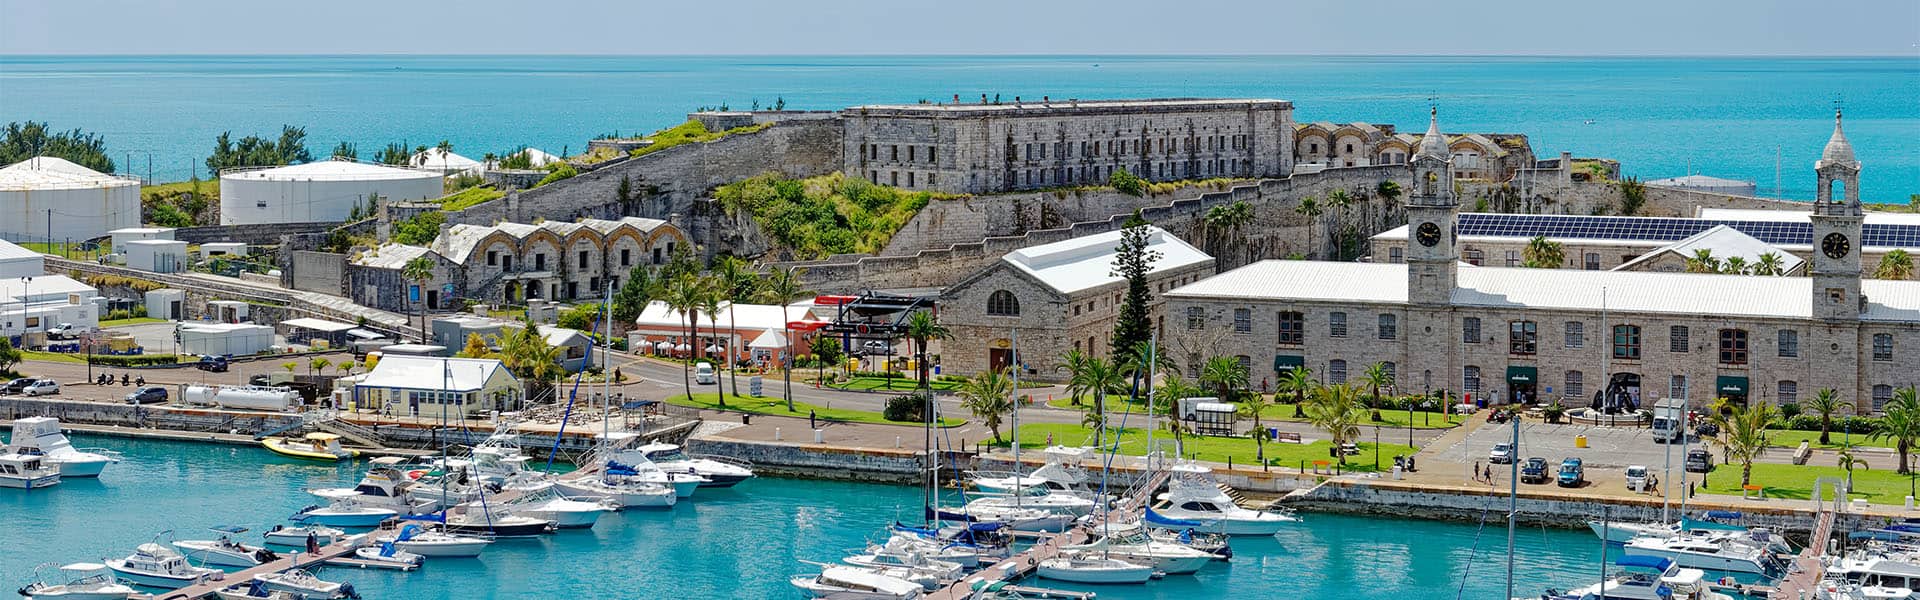 Bermuda: Royal Naval Dockyard